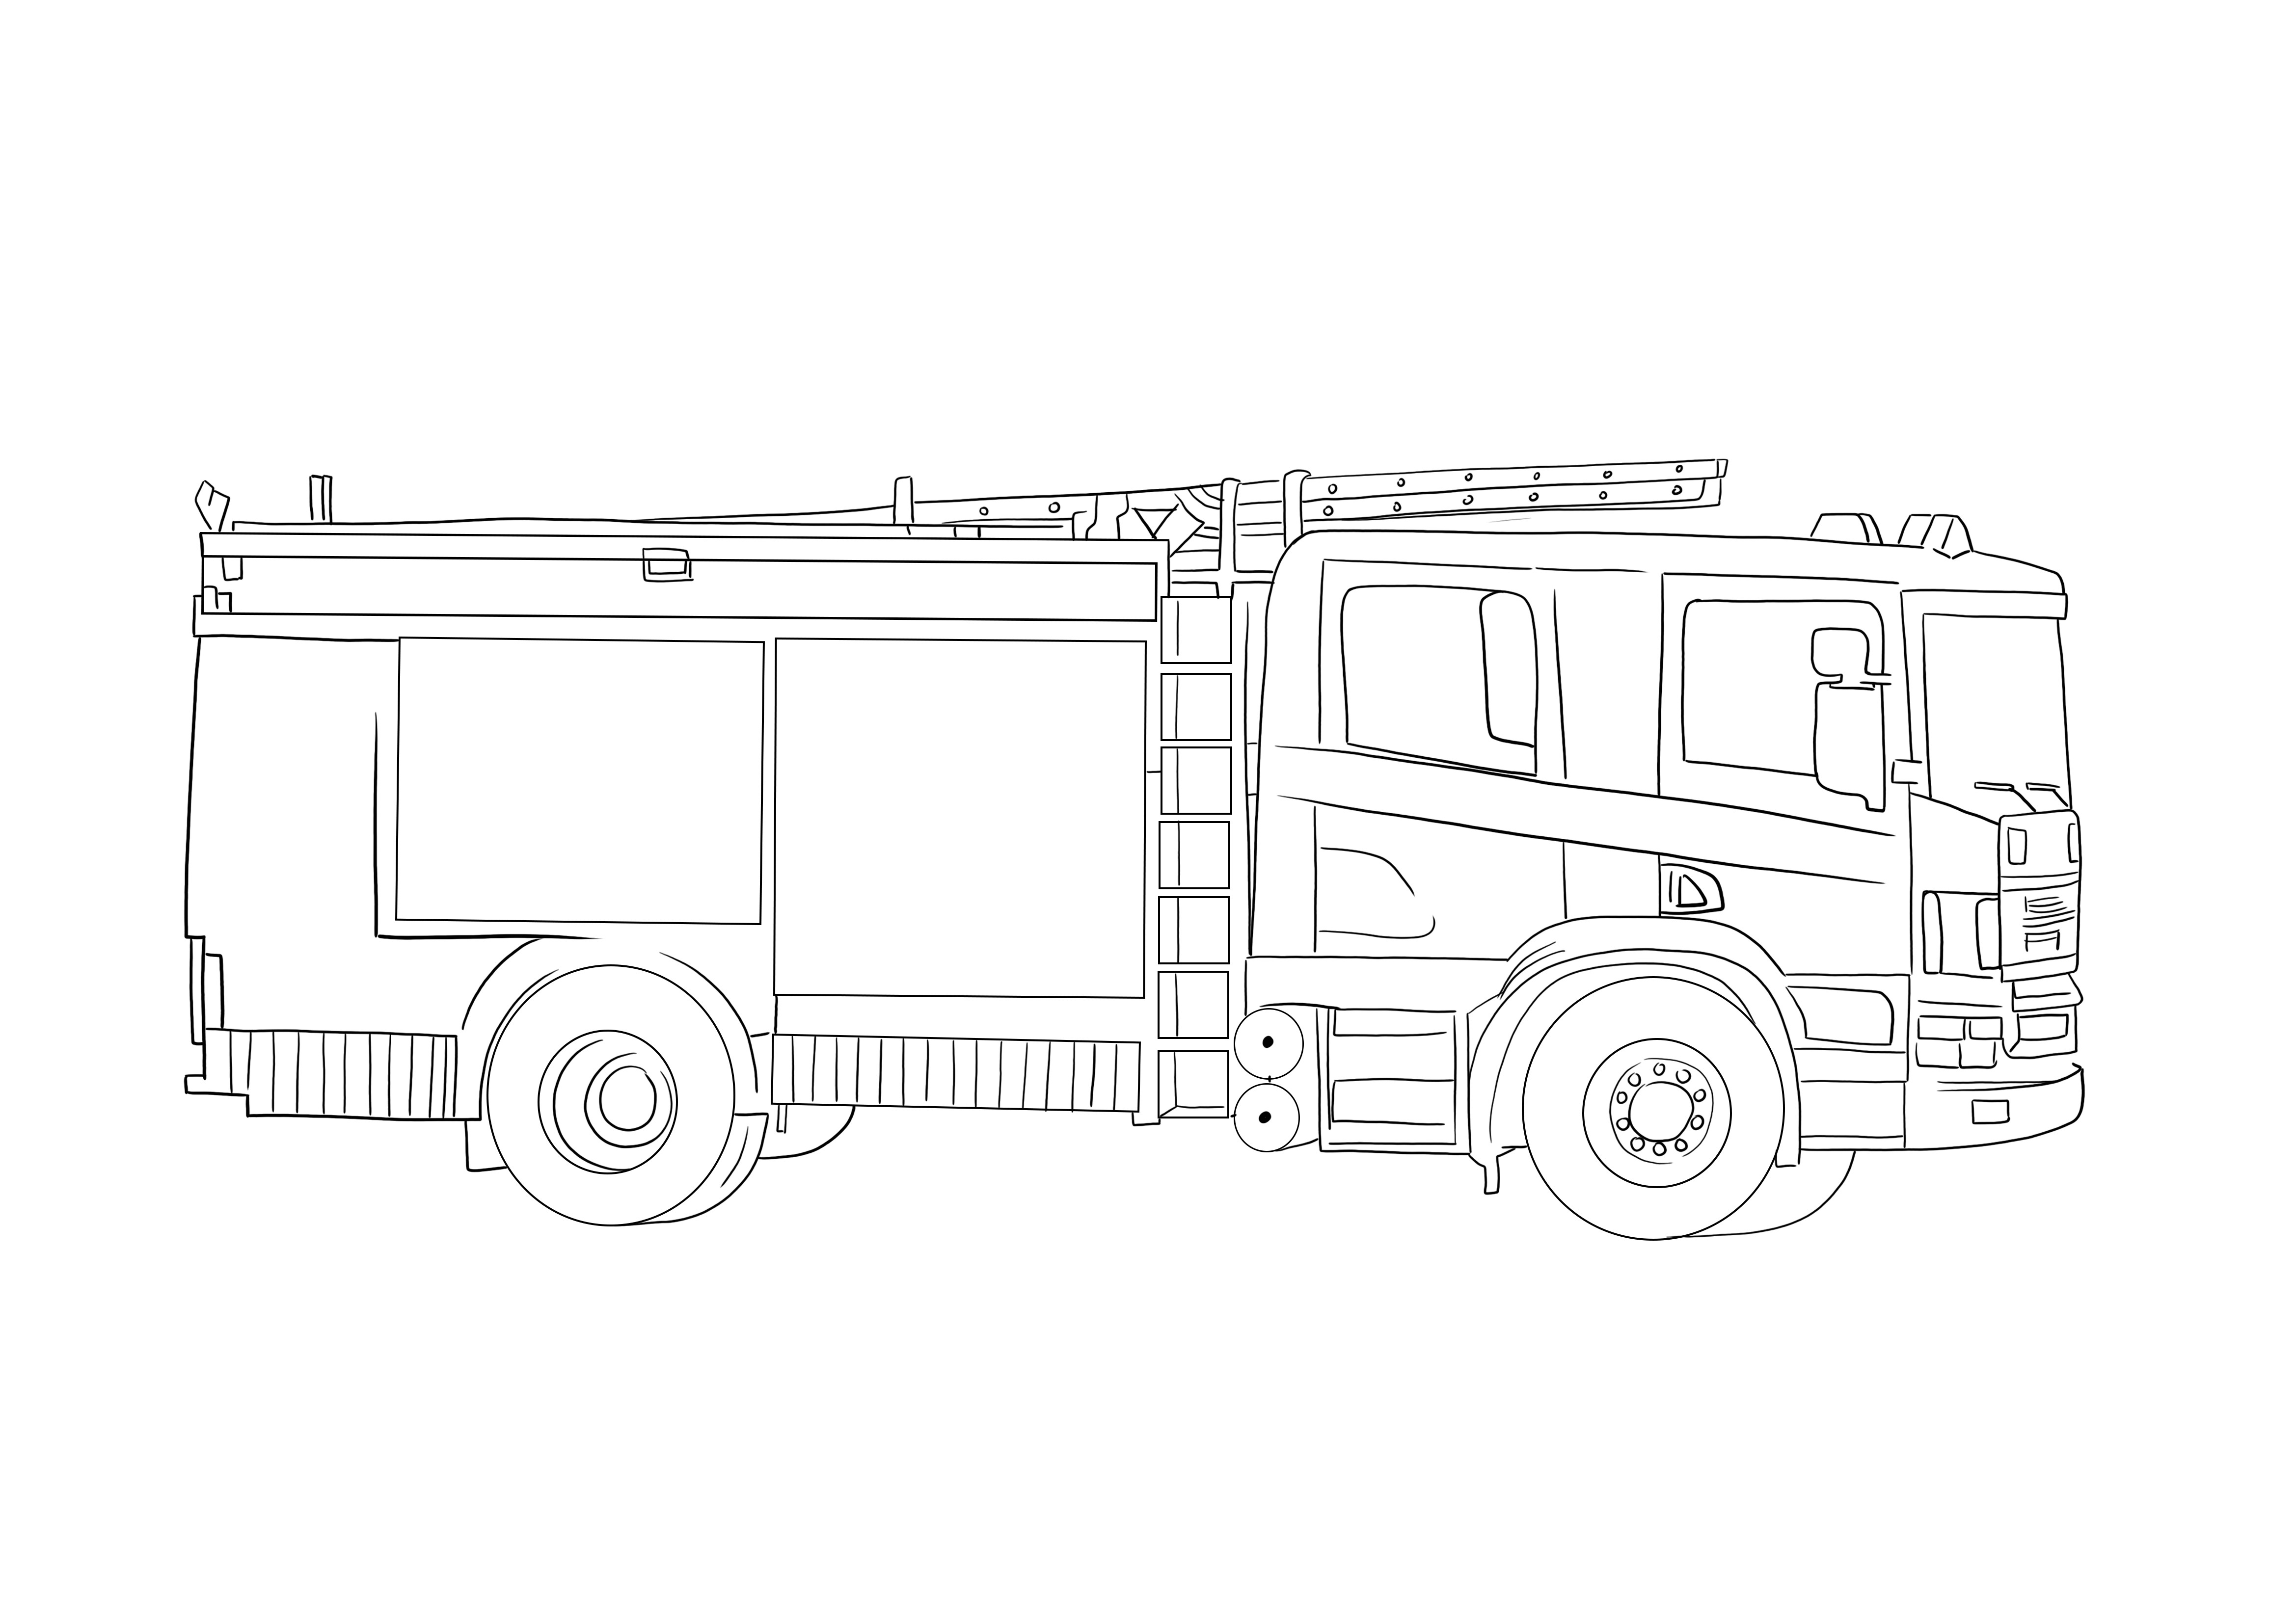 A Fire Truck színezőlapunk készen áll a nyomtatásra